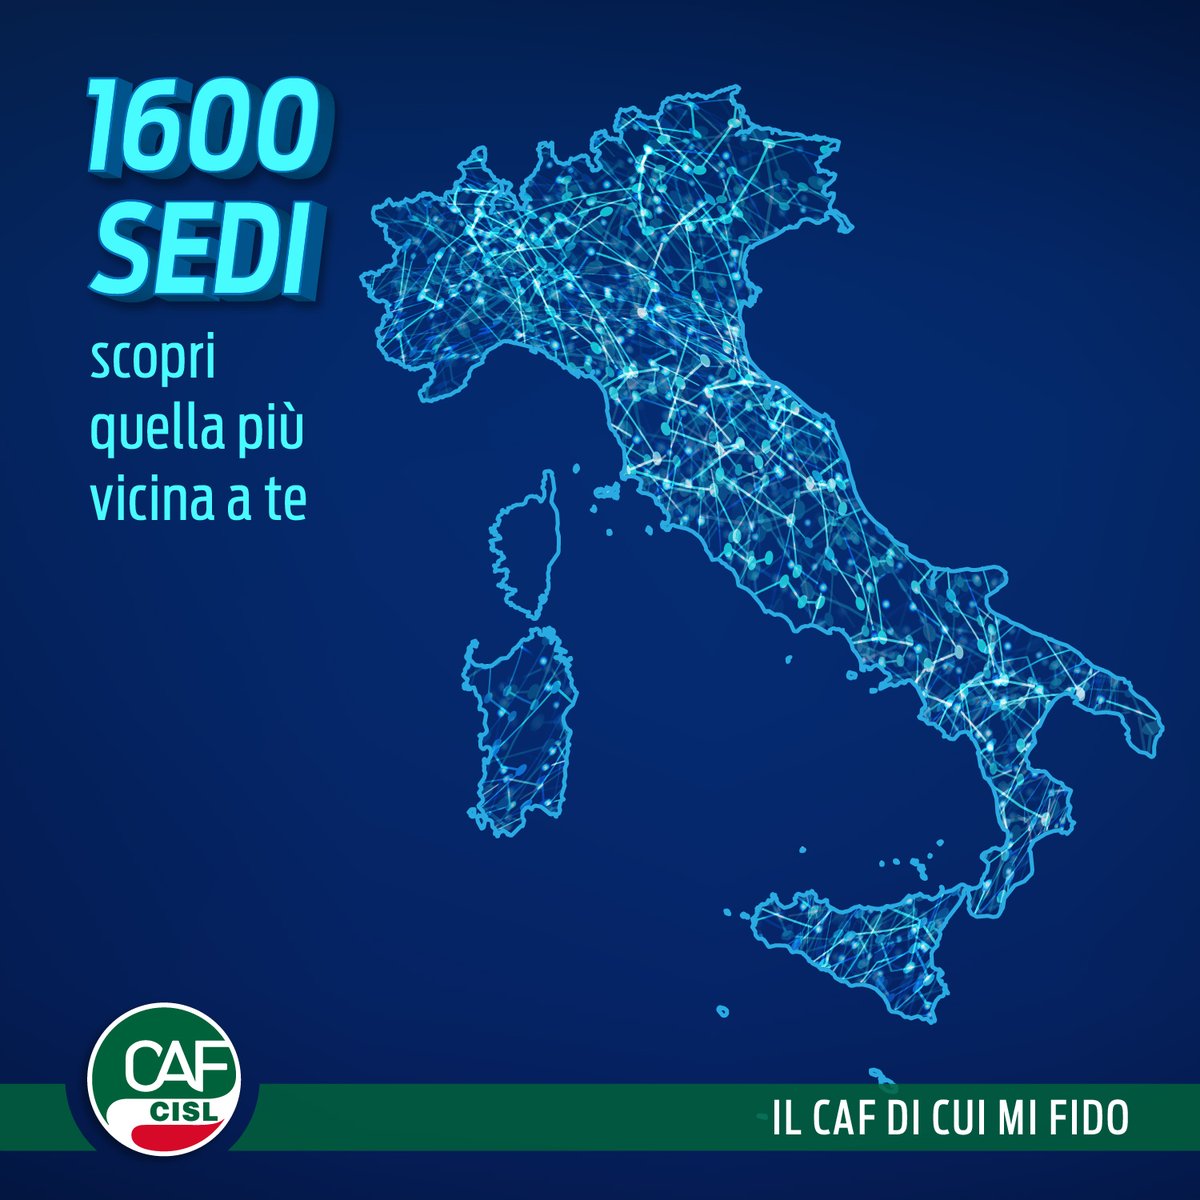 Con oltre 1,600 sedi in Italia c'è sicuramente una sede Caf CISL vicino a te! 📍Scopri subito la sede più vicina a casa tua con il pratico Trova Sedi online. Clicca qui: cafcisl.it/sedi